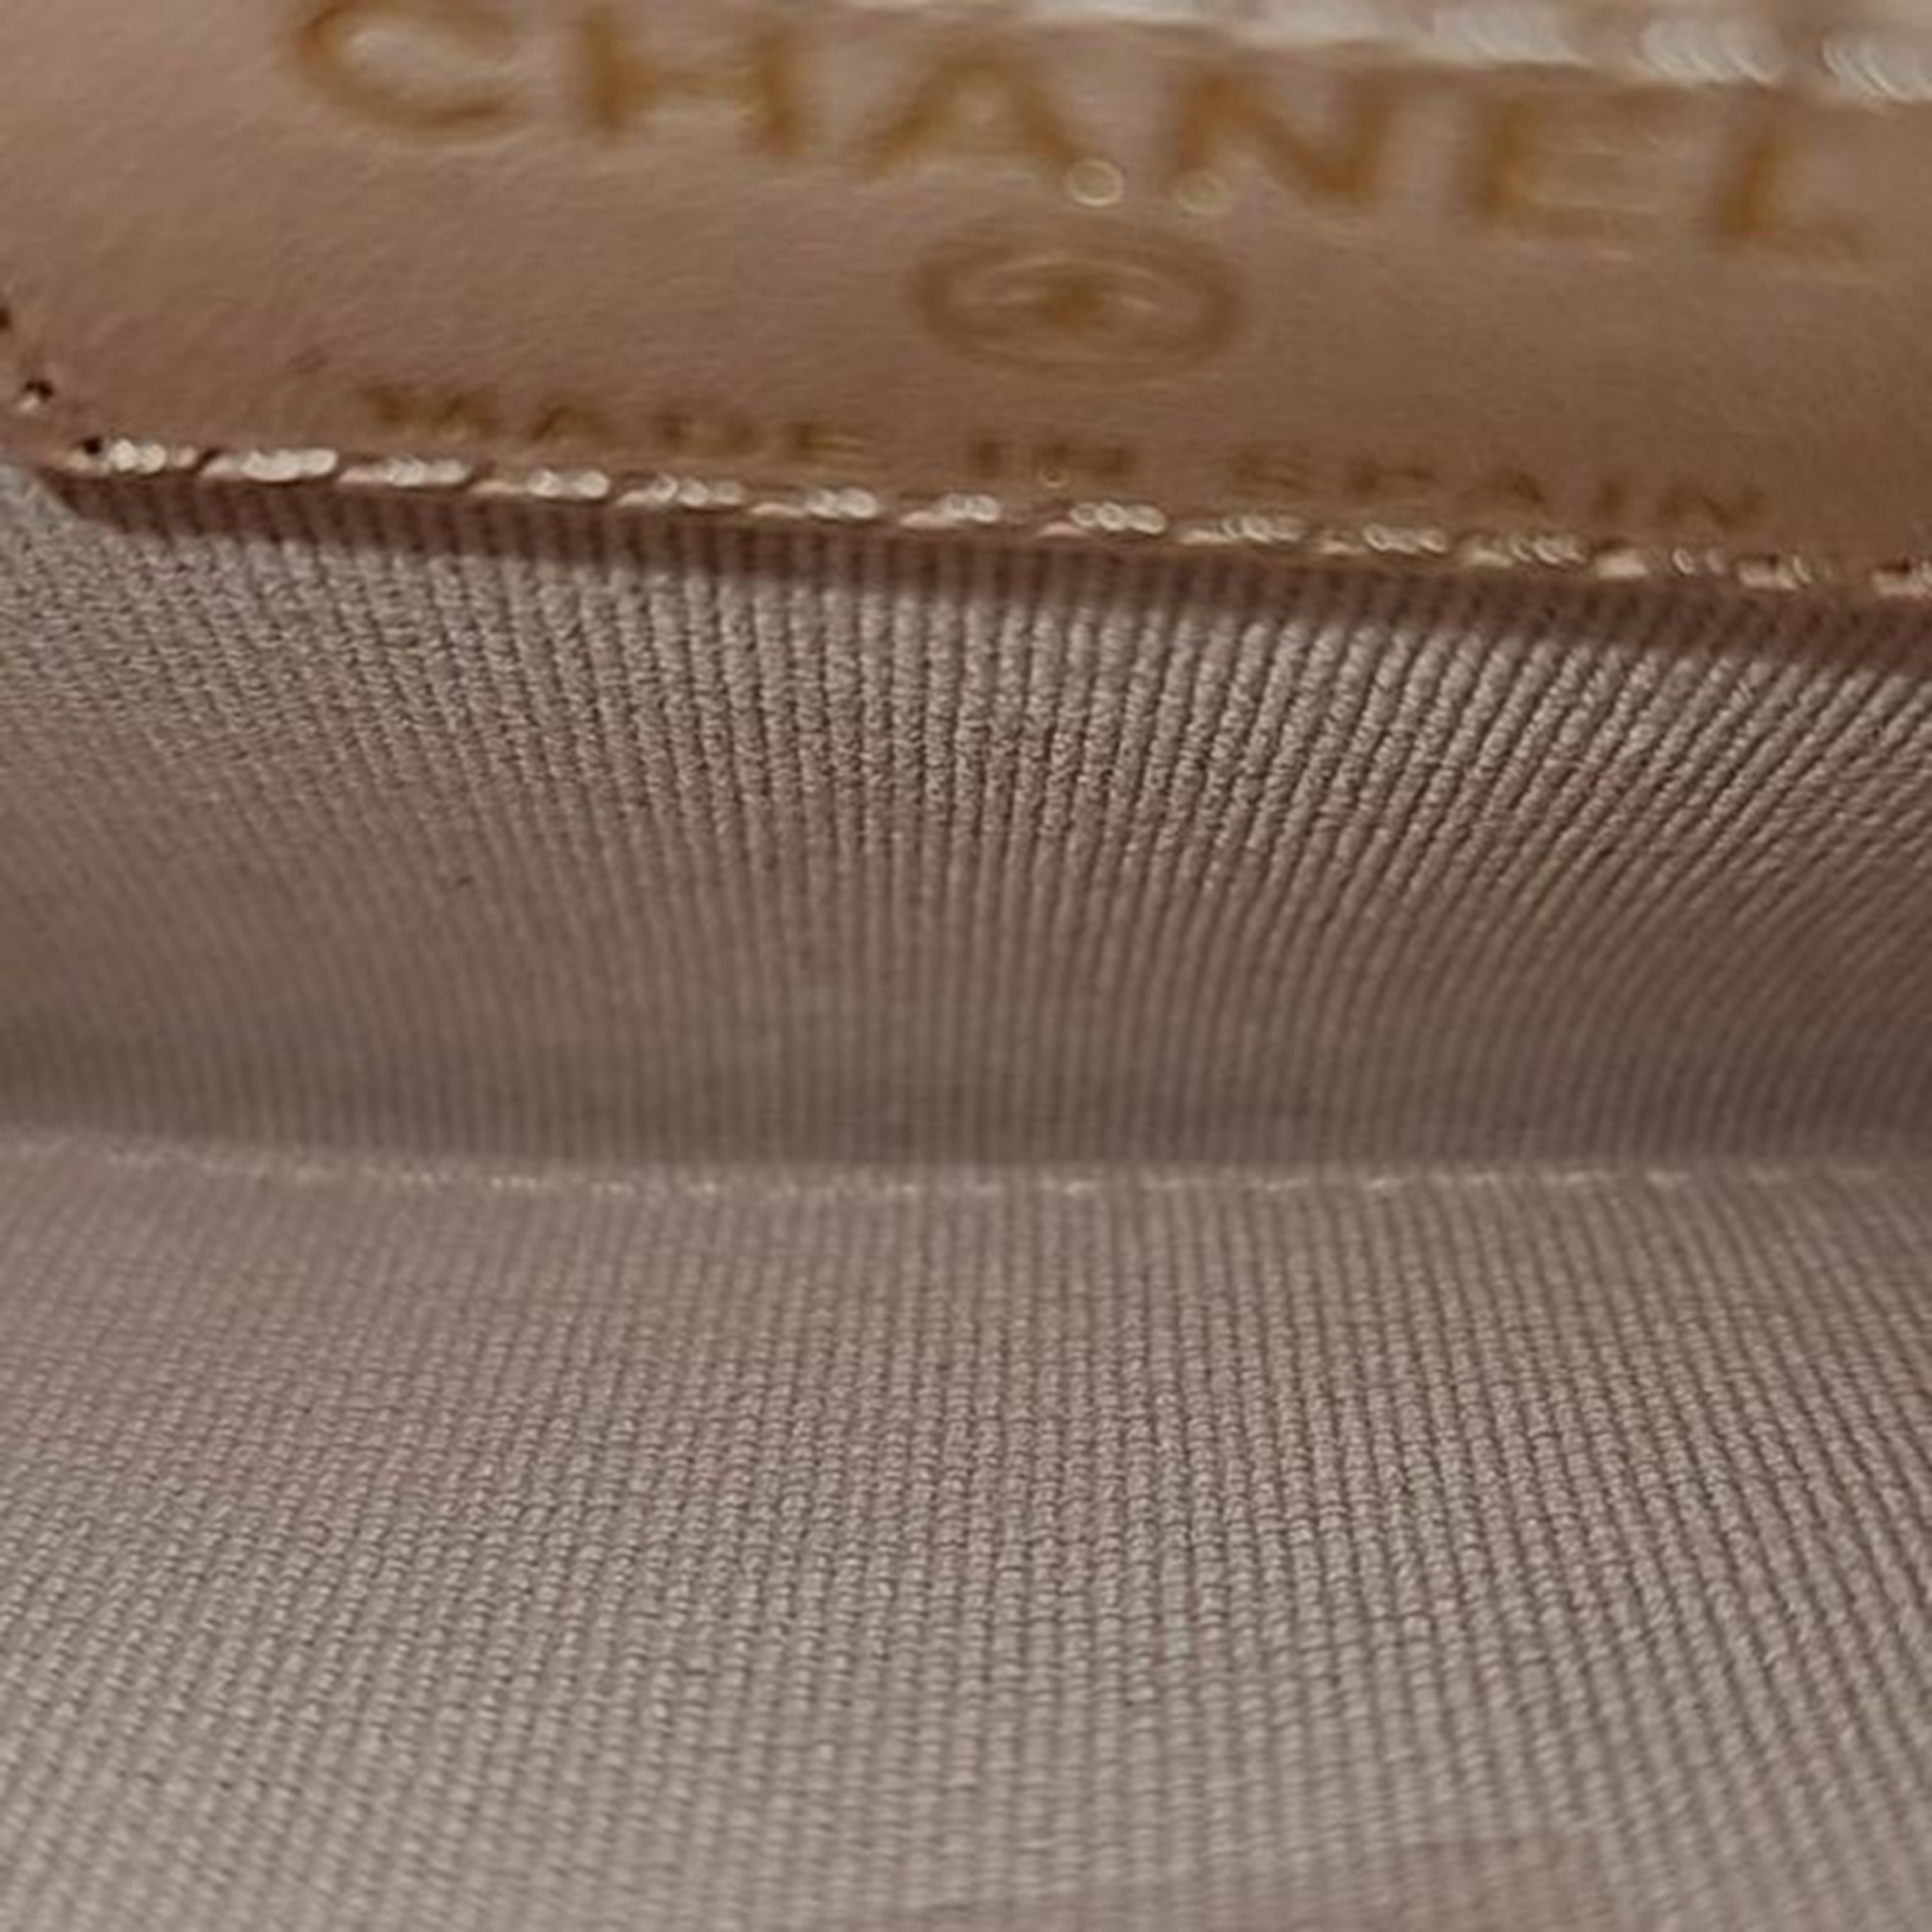 Chanel Caviar Card Wallet